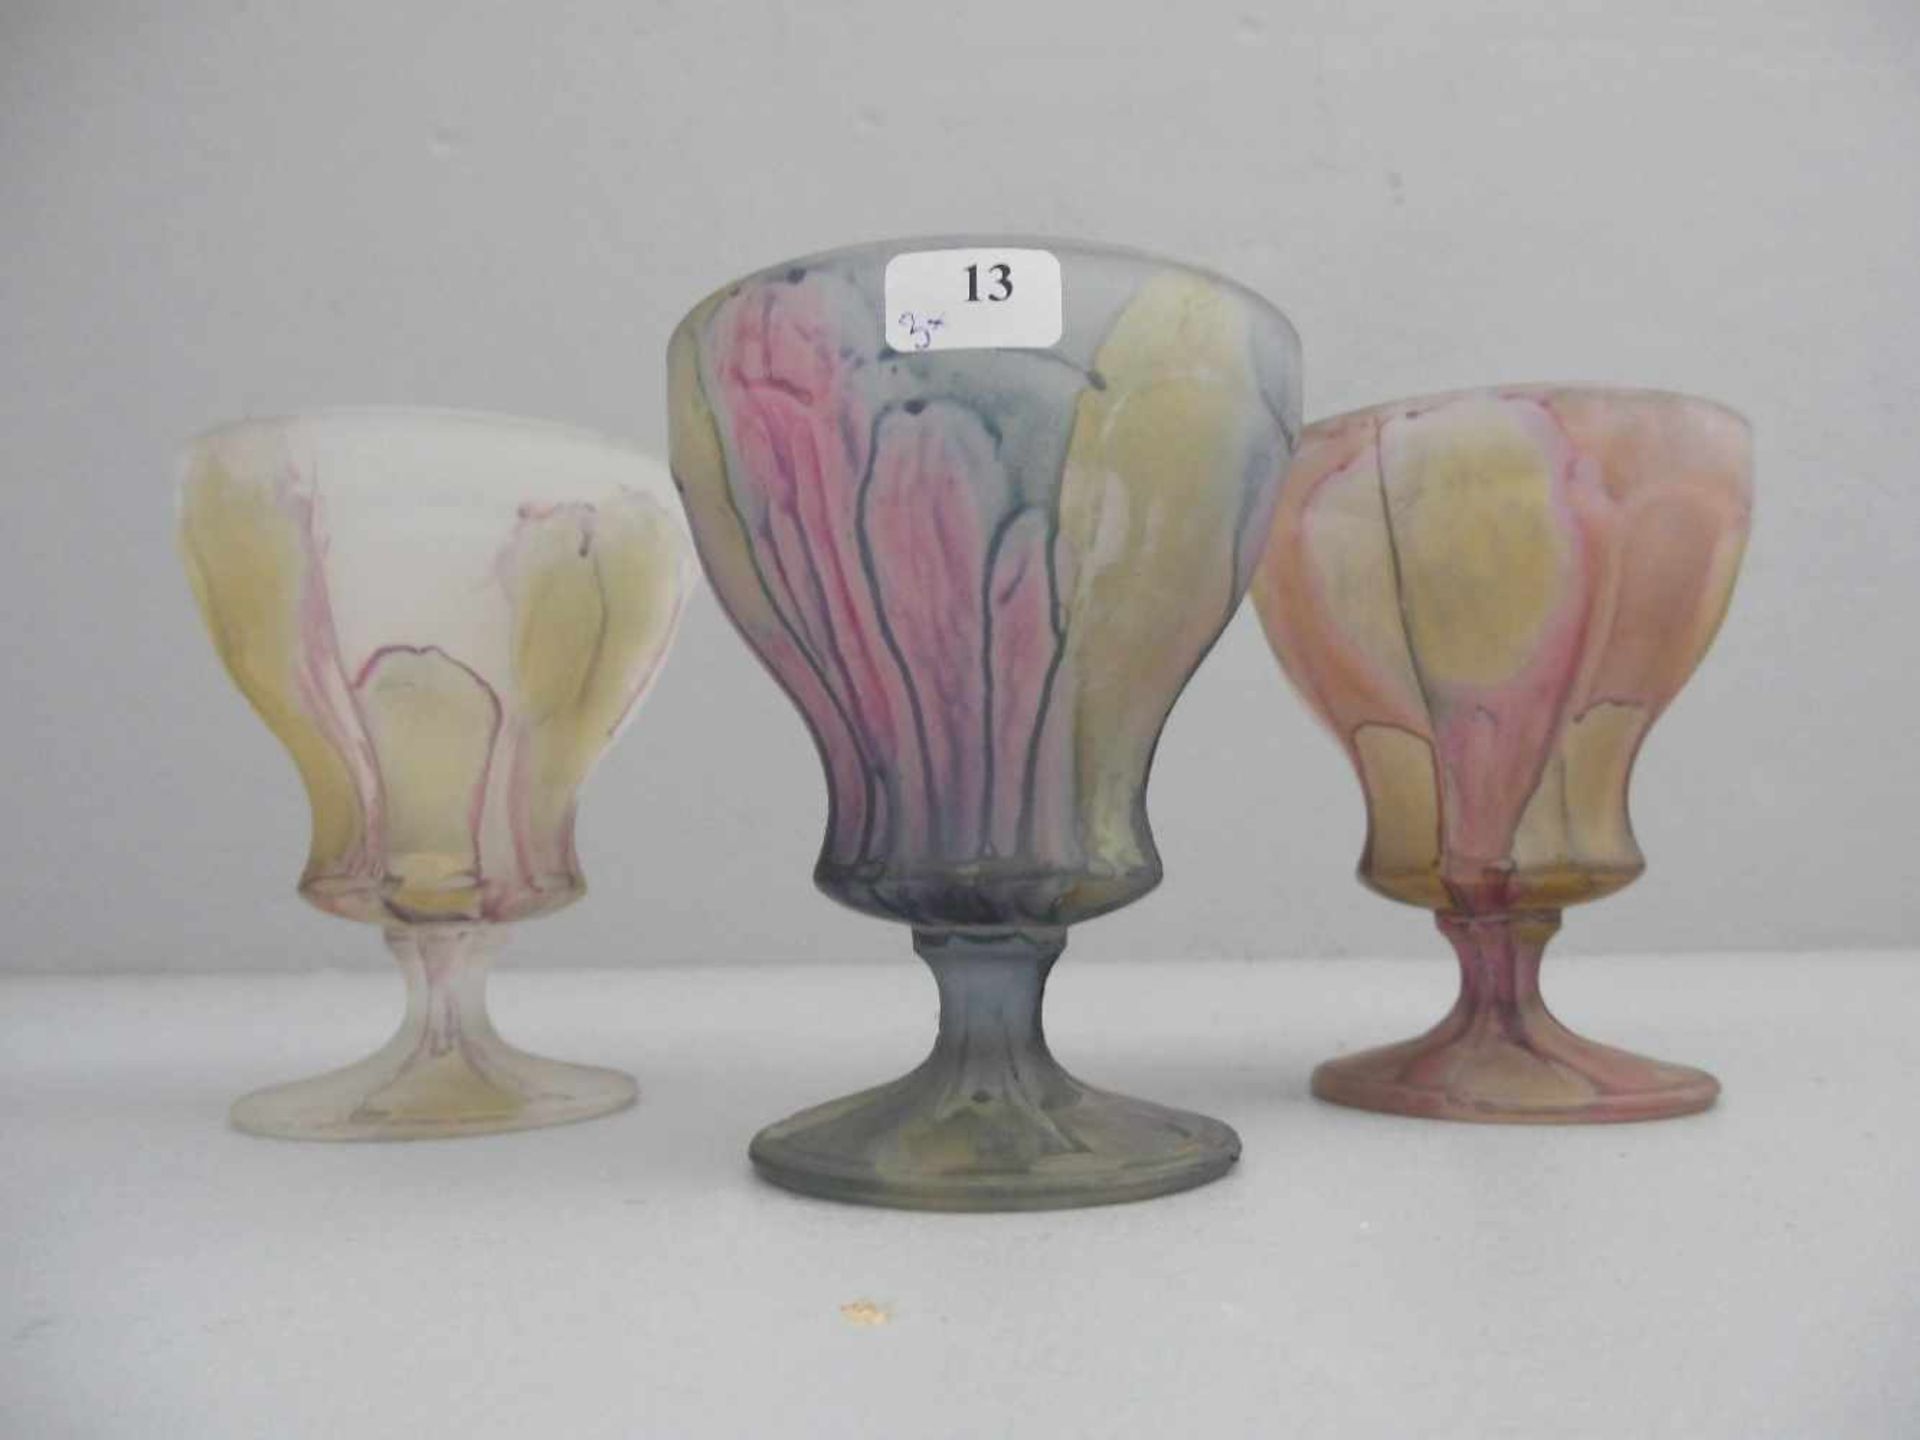 3 EISBECHER / GLAS - FUSSSCHALEN / ice cream glas bowls, Mitte 20. Jh., Pressglas. Konische Form mit - Image 2 of 3